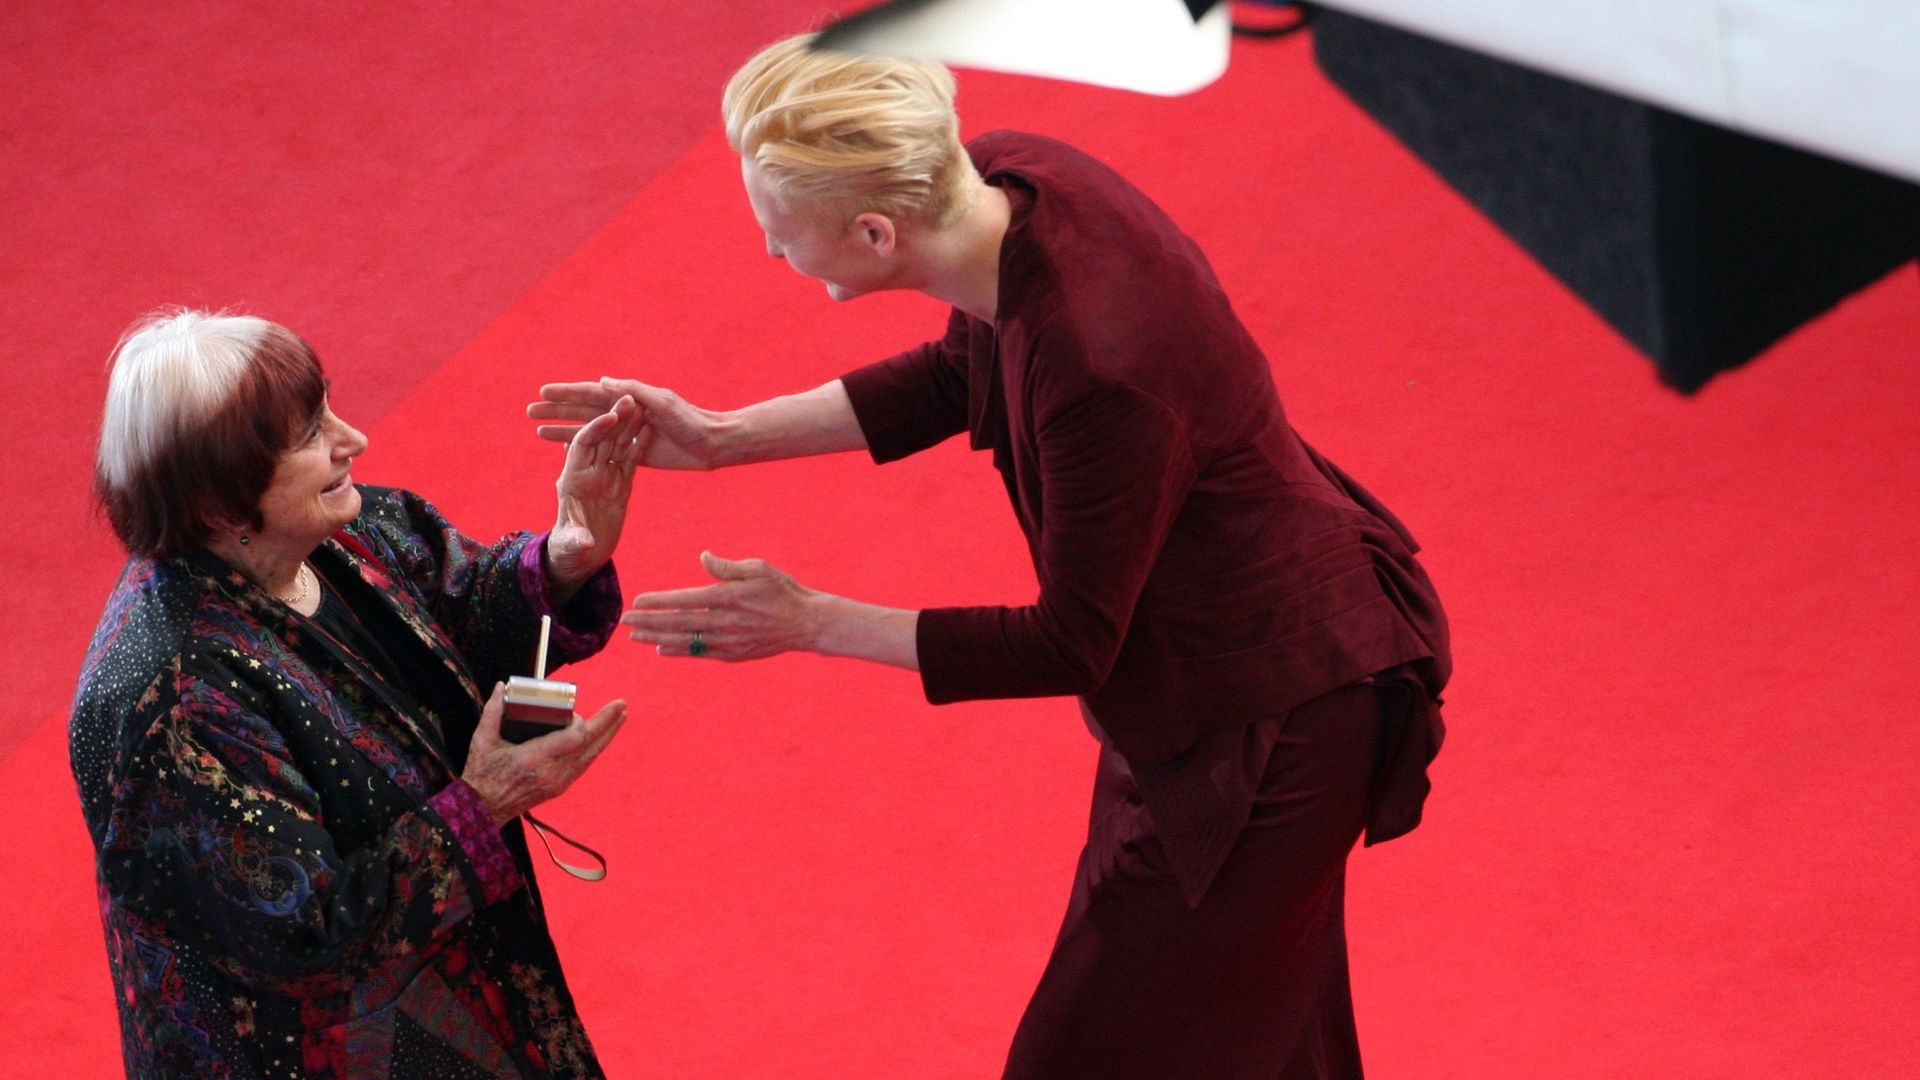 L'actrice Tilda Swinton et Agnès Varda en 2009 à Cannes, pour la présentation du film "Up" (Pixar)